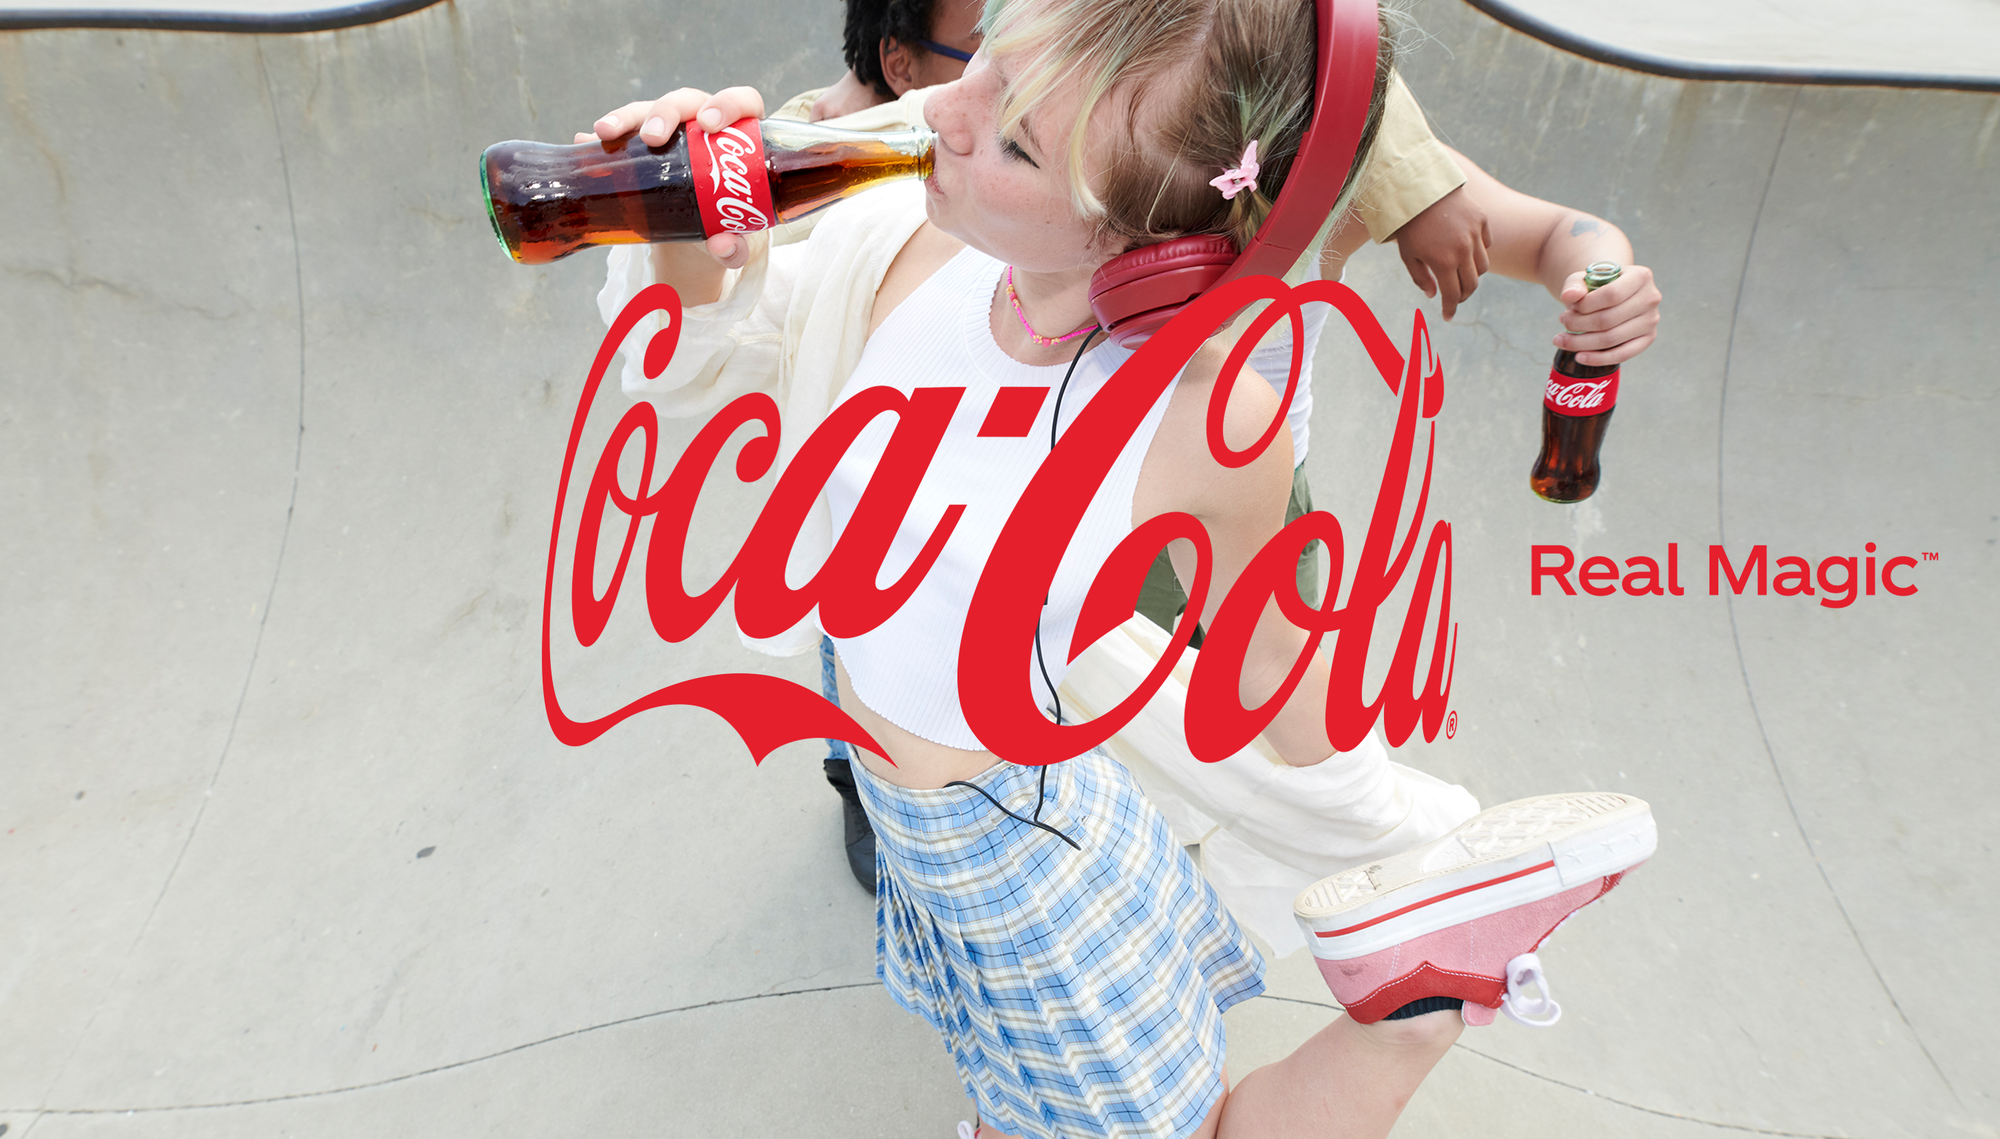 Giữa Covid, ông lớn Coca-Cola đổi logo, nhìn ngỡ logo cũ nhưng có một chi tiết thú vị! - Ảnh 1.